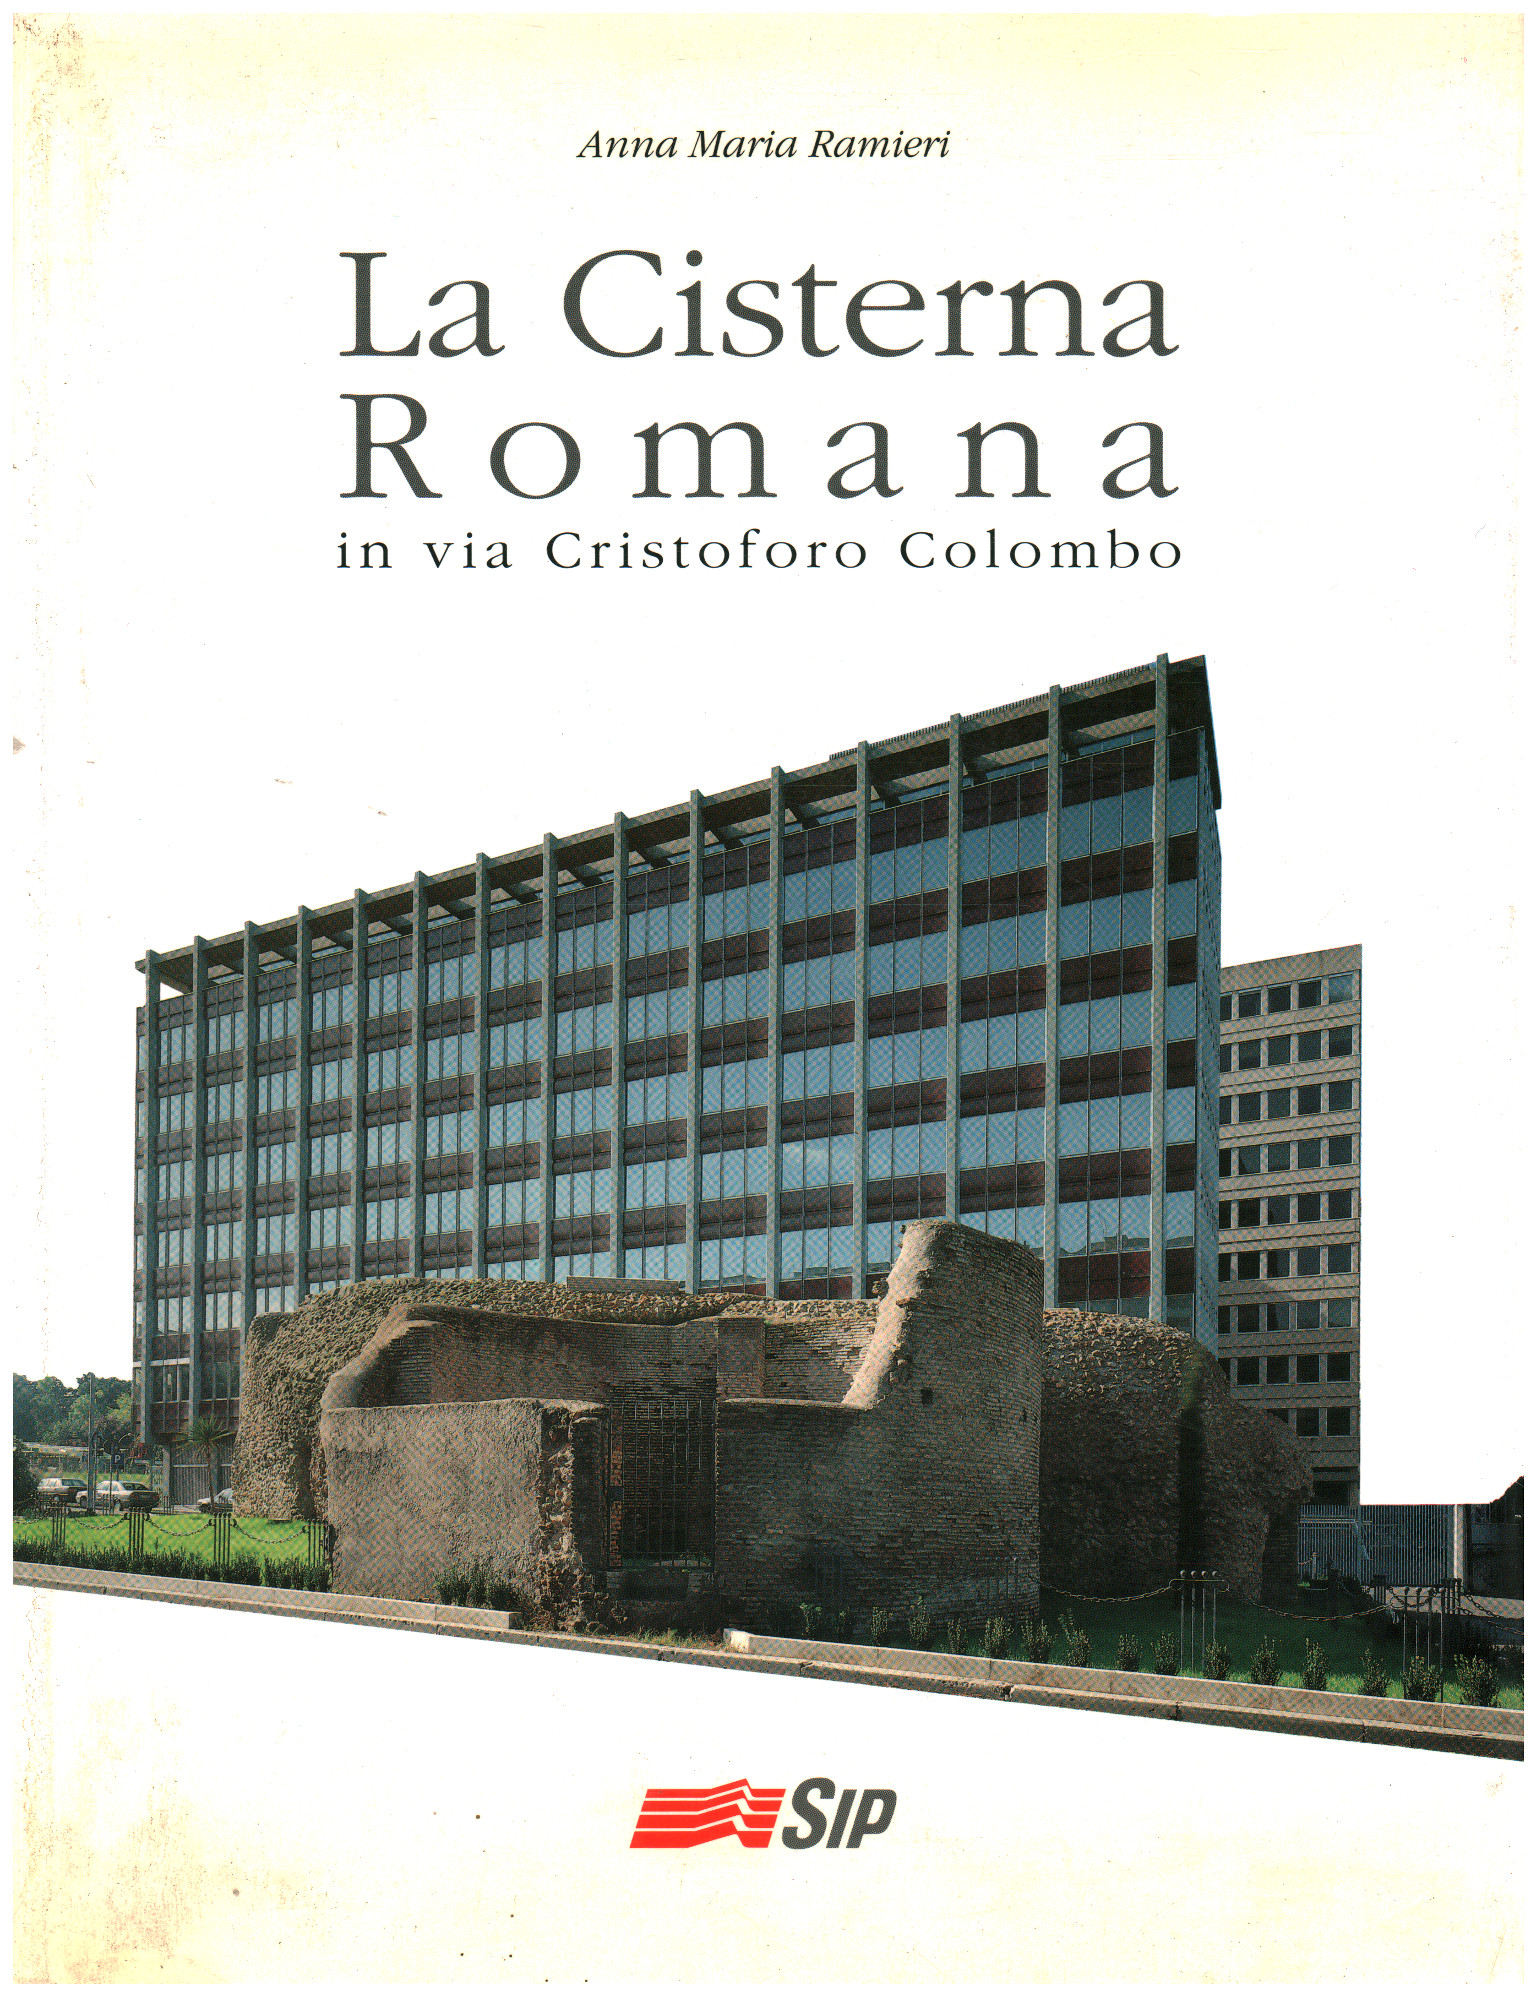 La Cisterna Romana en via Cristoforo Colombo, Anna Maria Ramieri